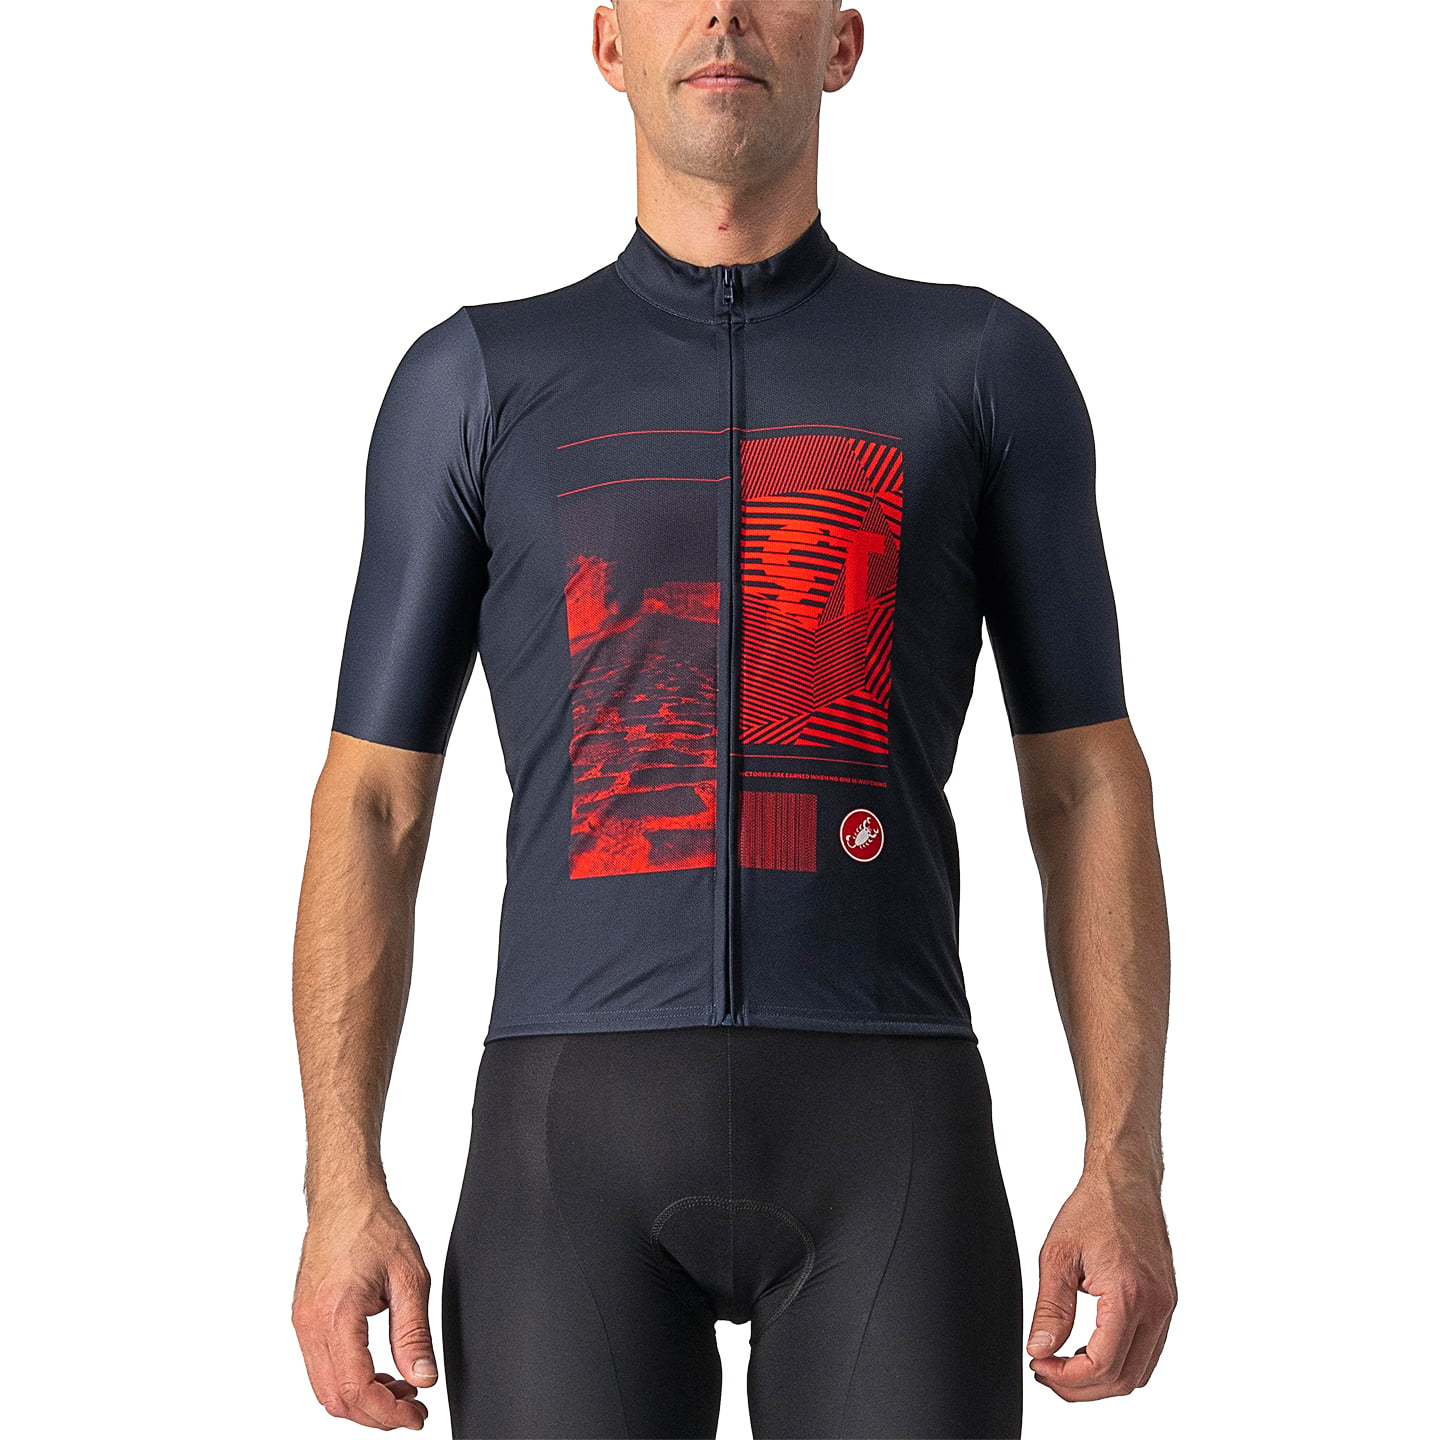 CASTELLI 13 Screen Short Sleeve Jersey Short Sleeve Jersey, for men, size M, Cycling jersey, Cycling clothing